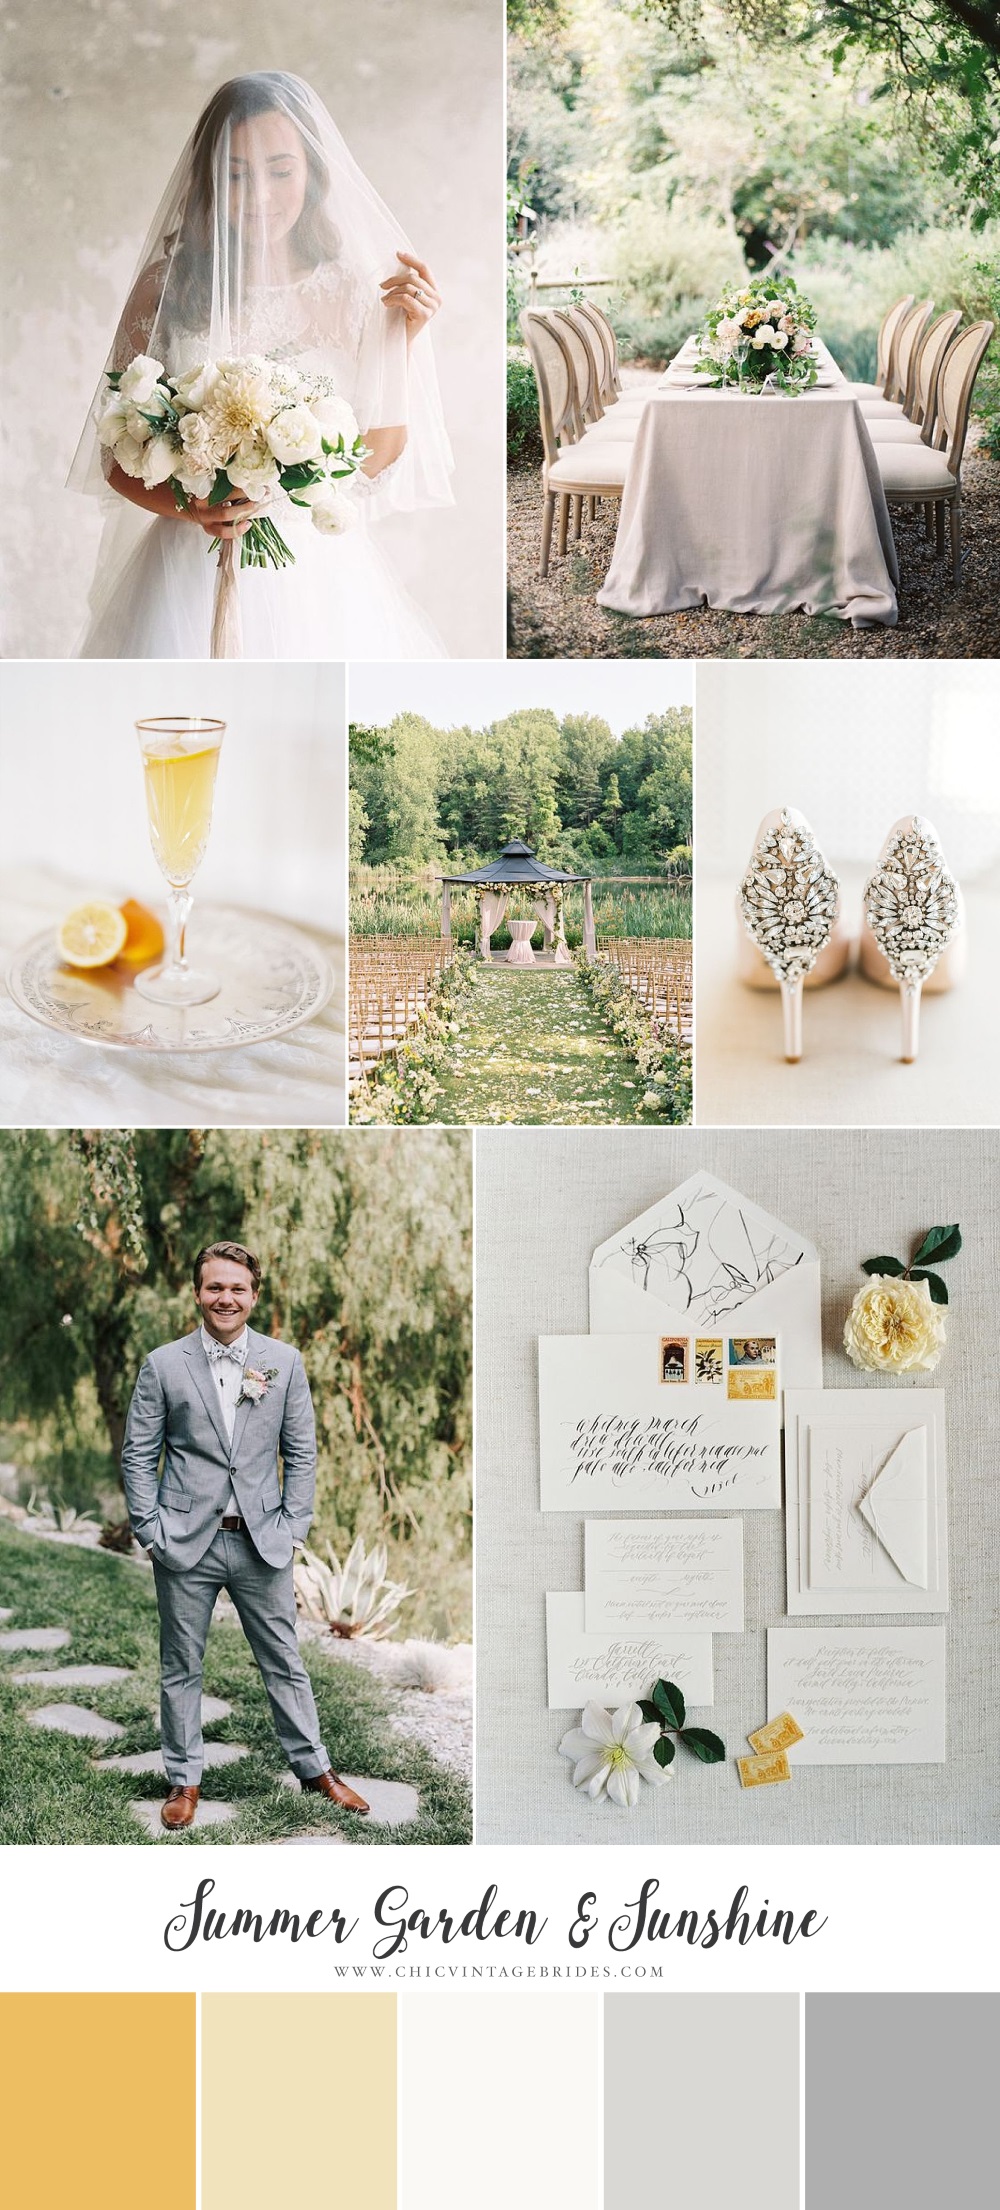  Summer Garden & Sunshine - Chic Garden Wedding Inspiration in Yellow & Grey